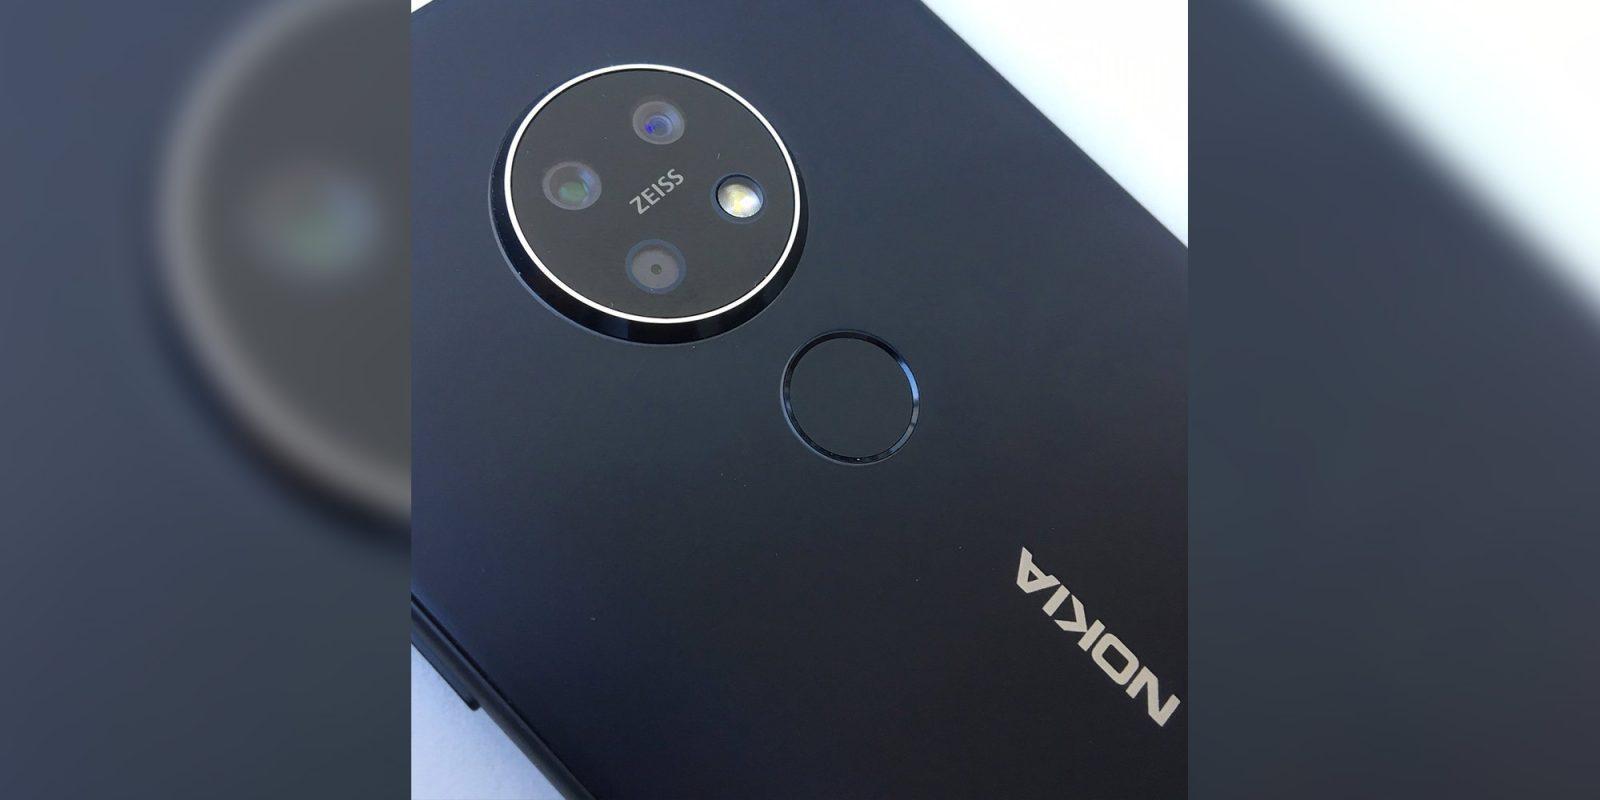 Nokia 7.2 स्मार्टफोन को लेकर नई जानकारी सामने आयी